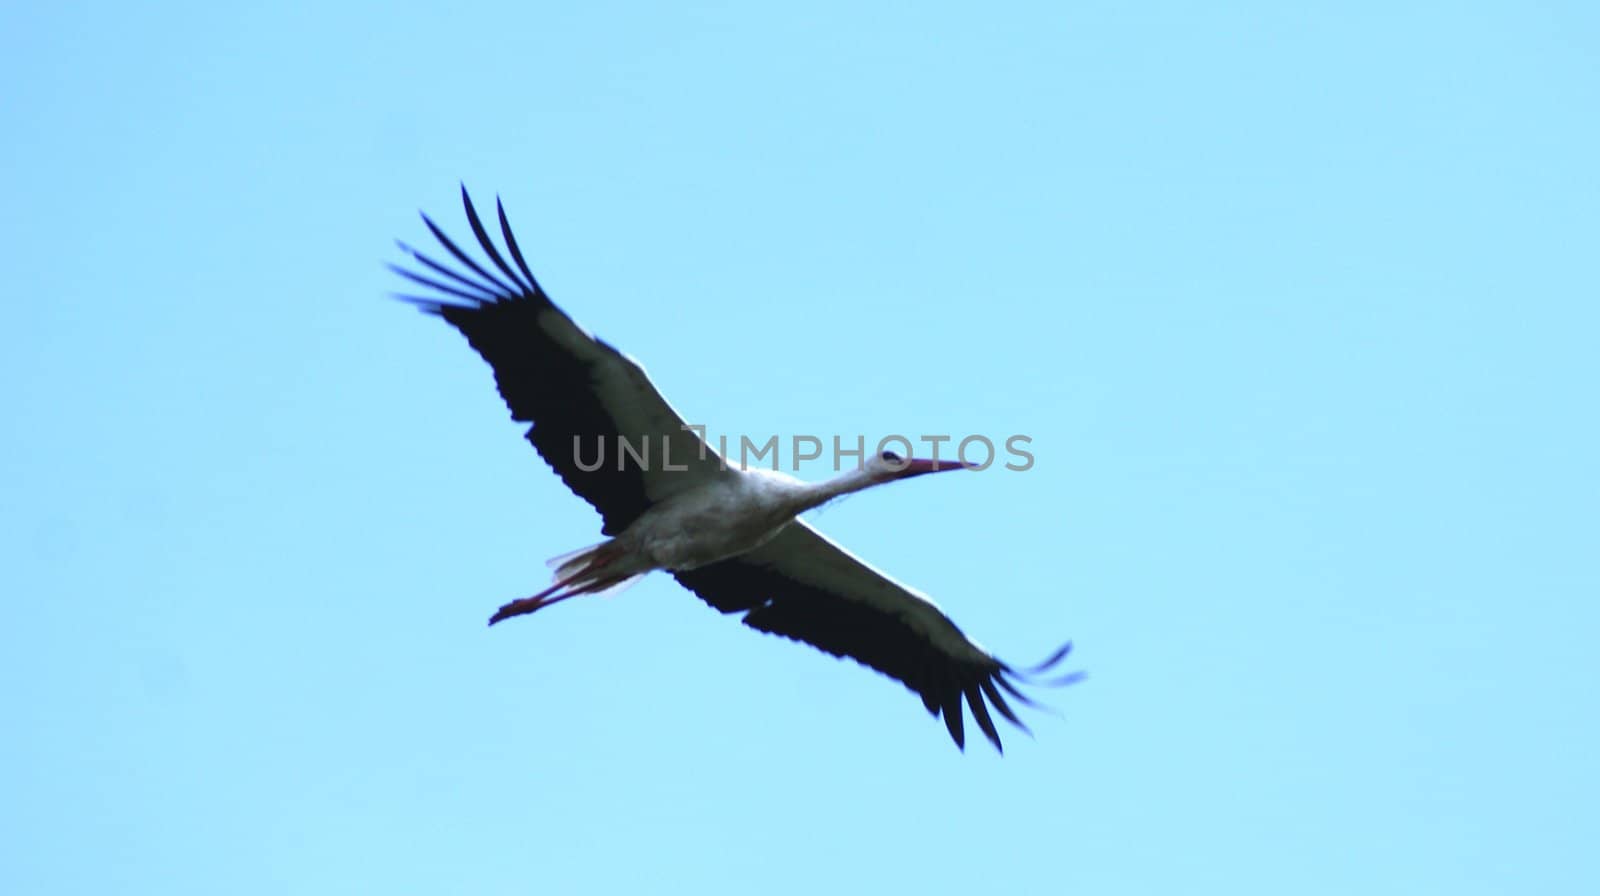 stork flight against the blue sky